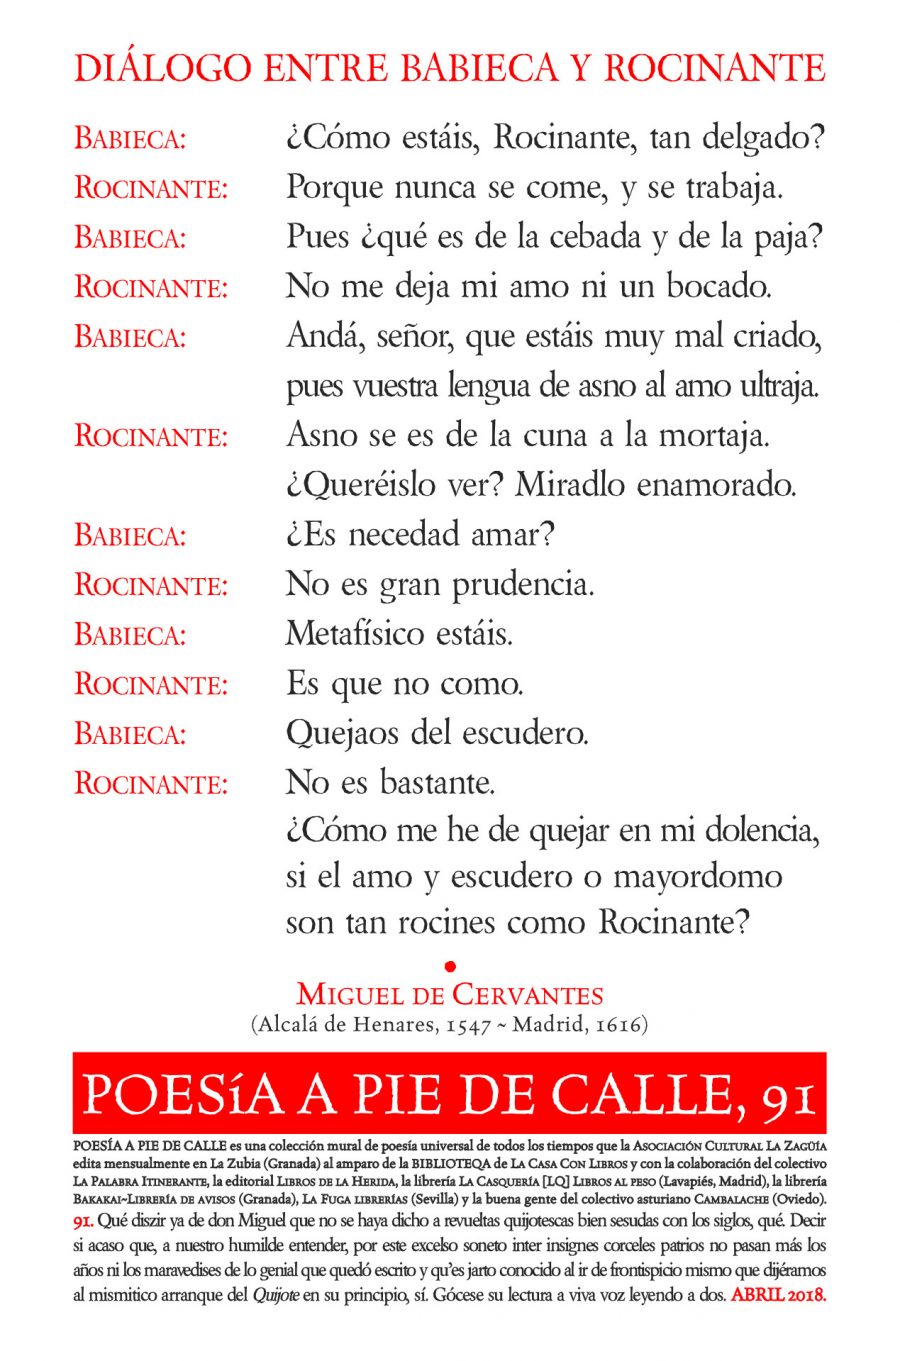 POESÍA A PIE DE CALLE, 91: Diálogo entre Babieca y Rocinante, de Miguel de Cervantes